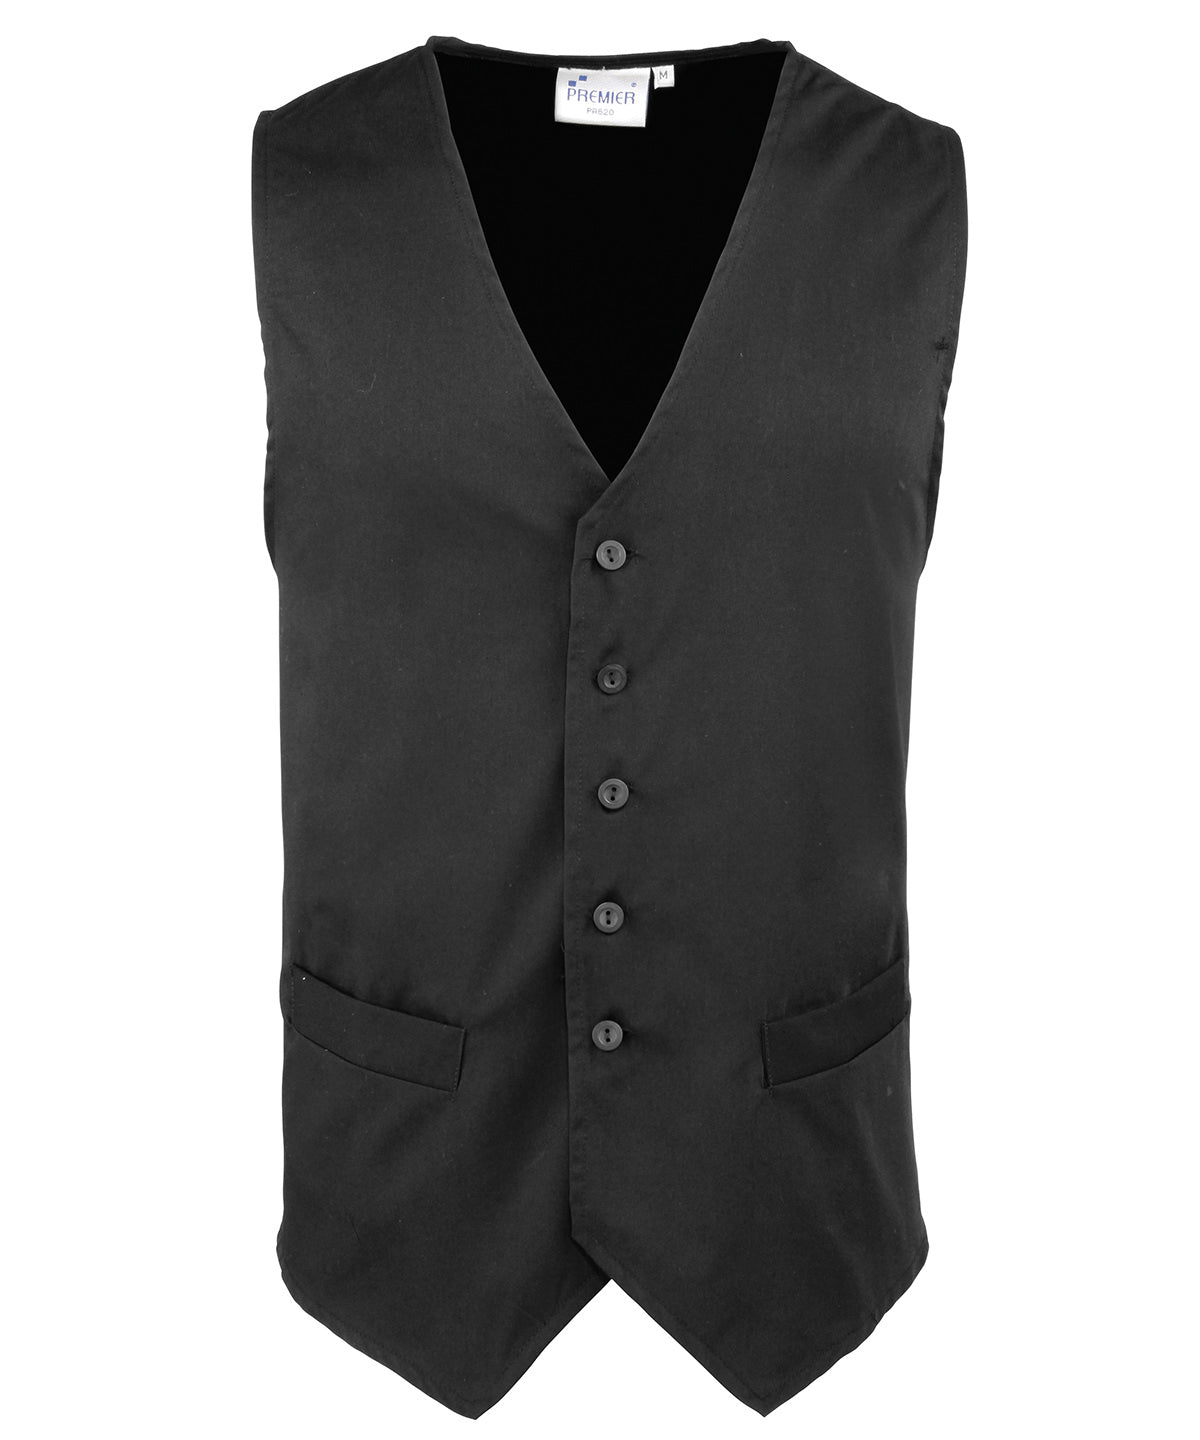 Premier Hospitality Waistcoat - 24 Workwear - Waistcoat